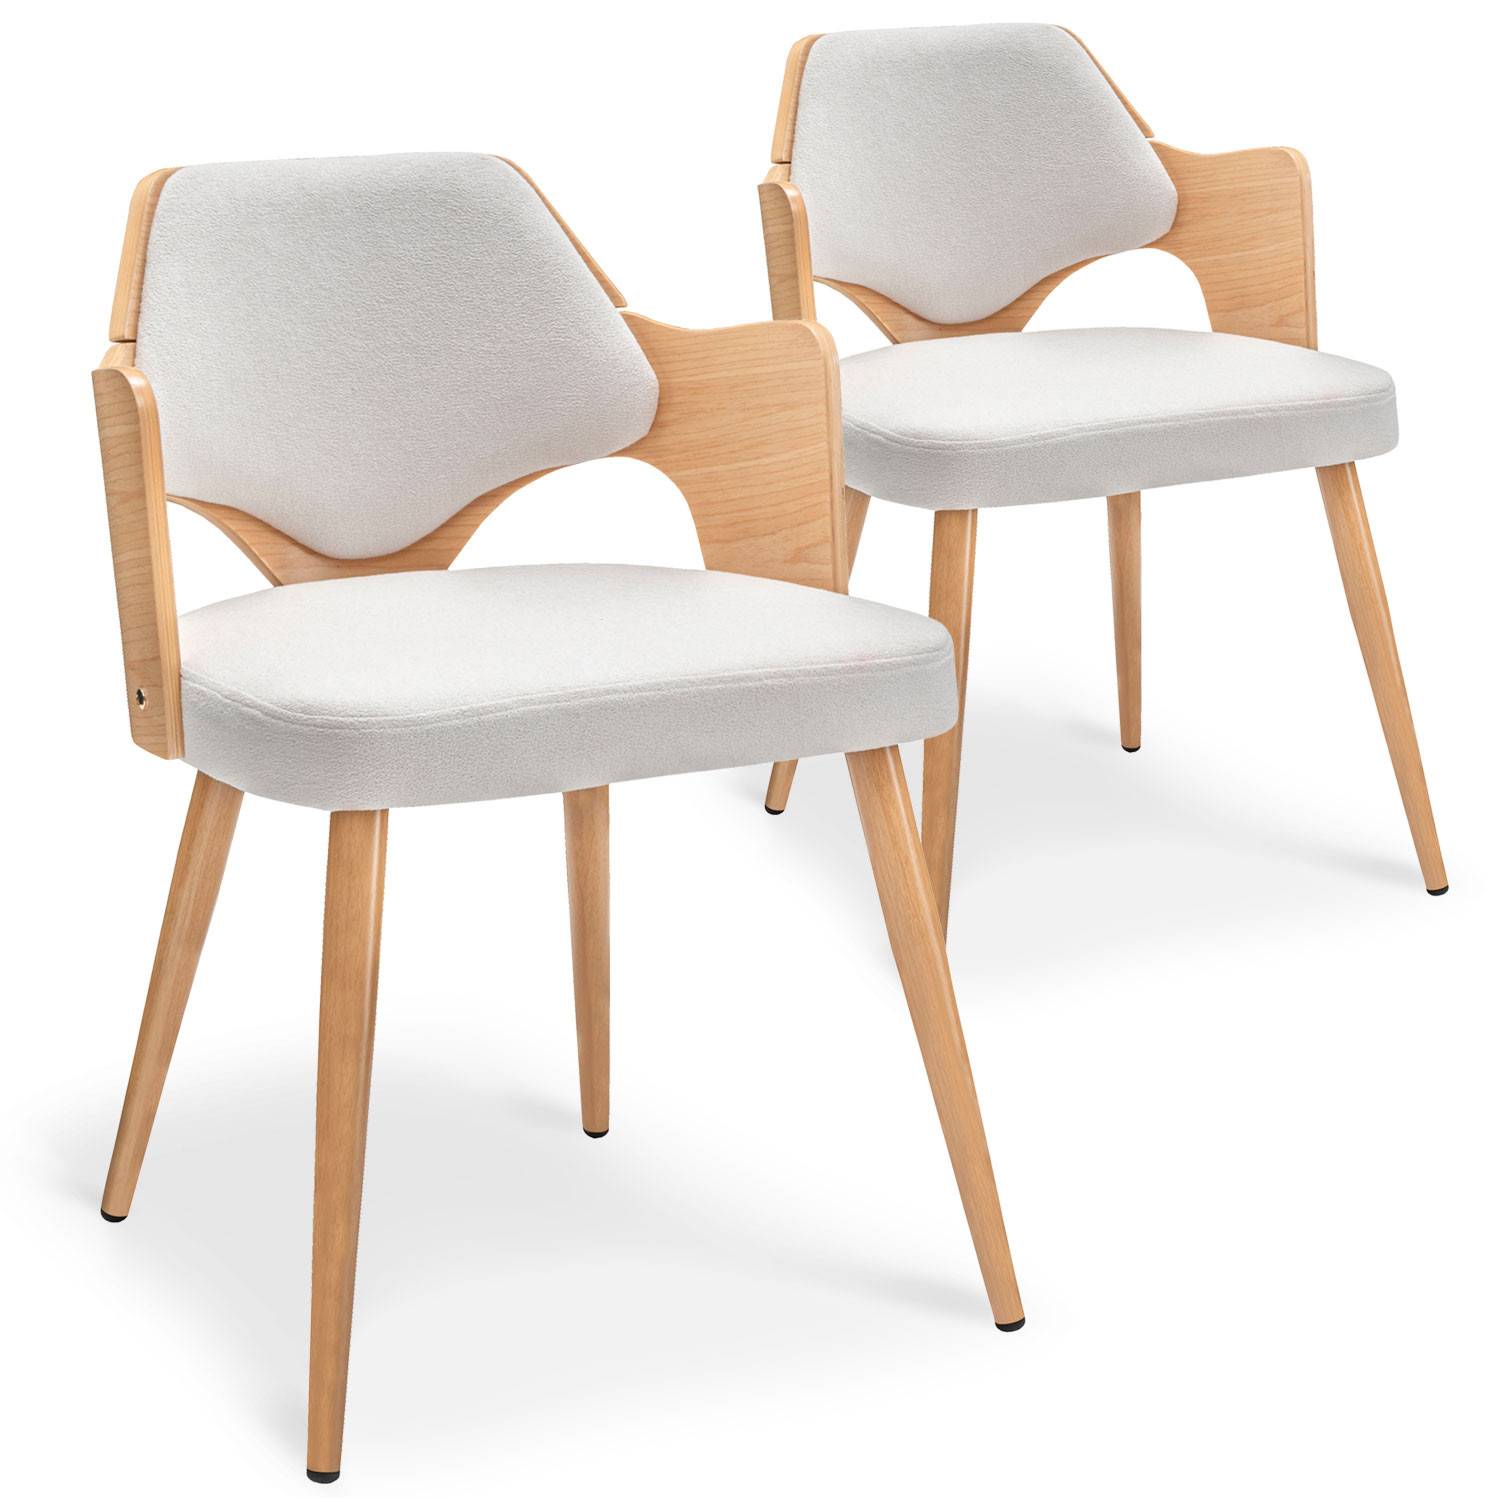 Lote de 2 sillas escandinavas Dima de roble claro y tela efecto borrego beige